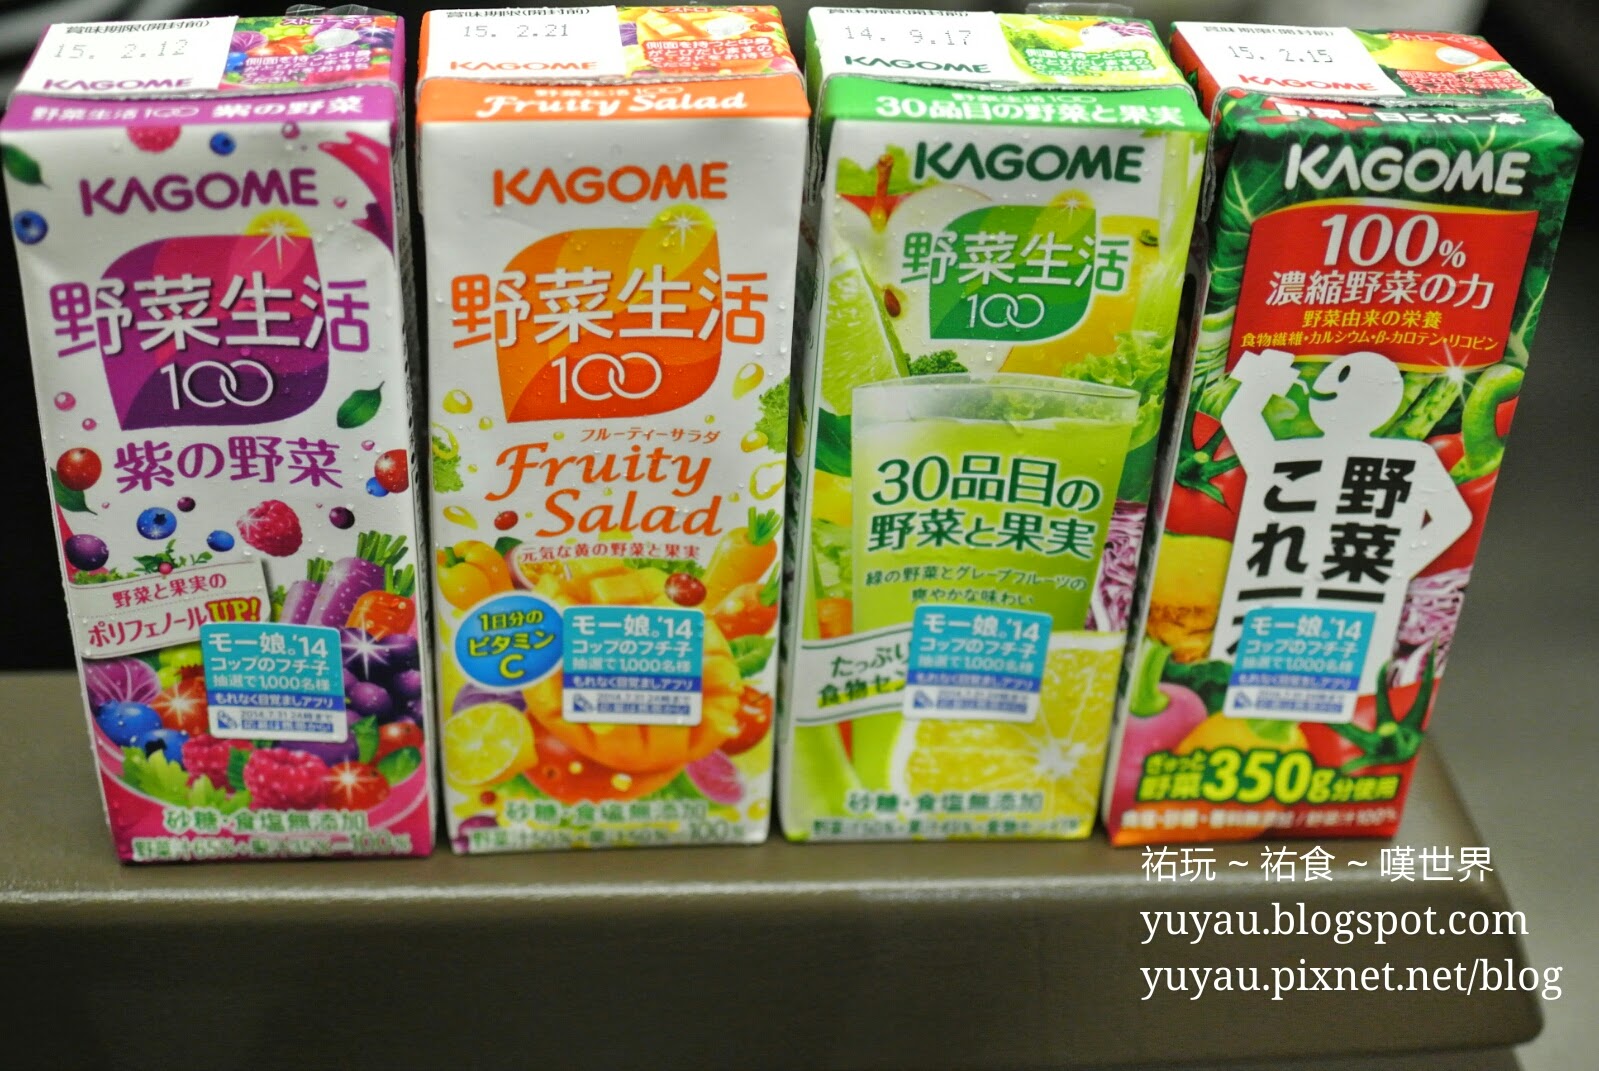 祐玩 祐食 歎世界 日本便利店必買 Kagome 野菜生活100 蔬菜水果汁